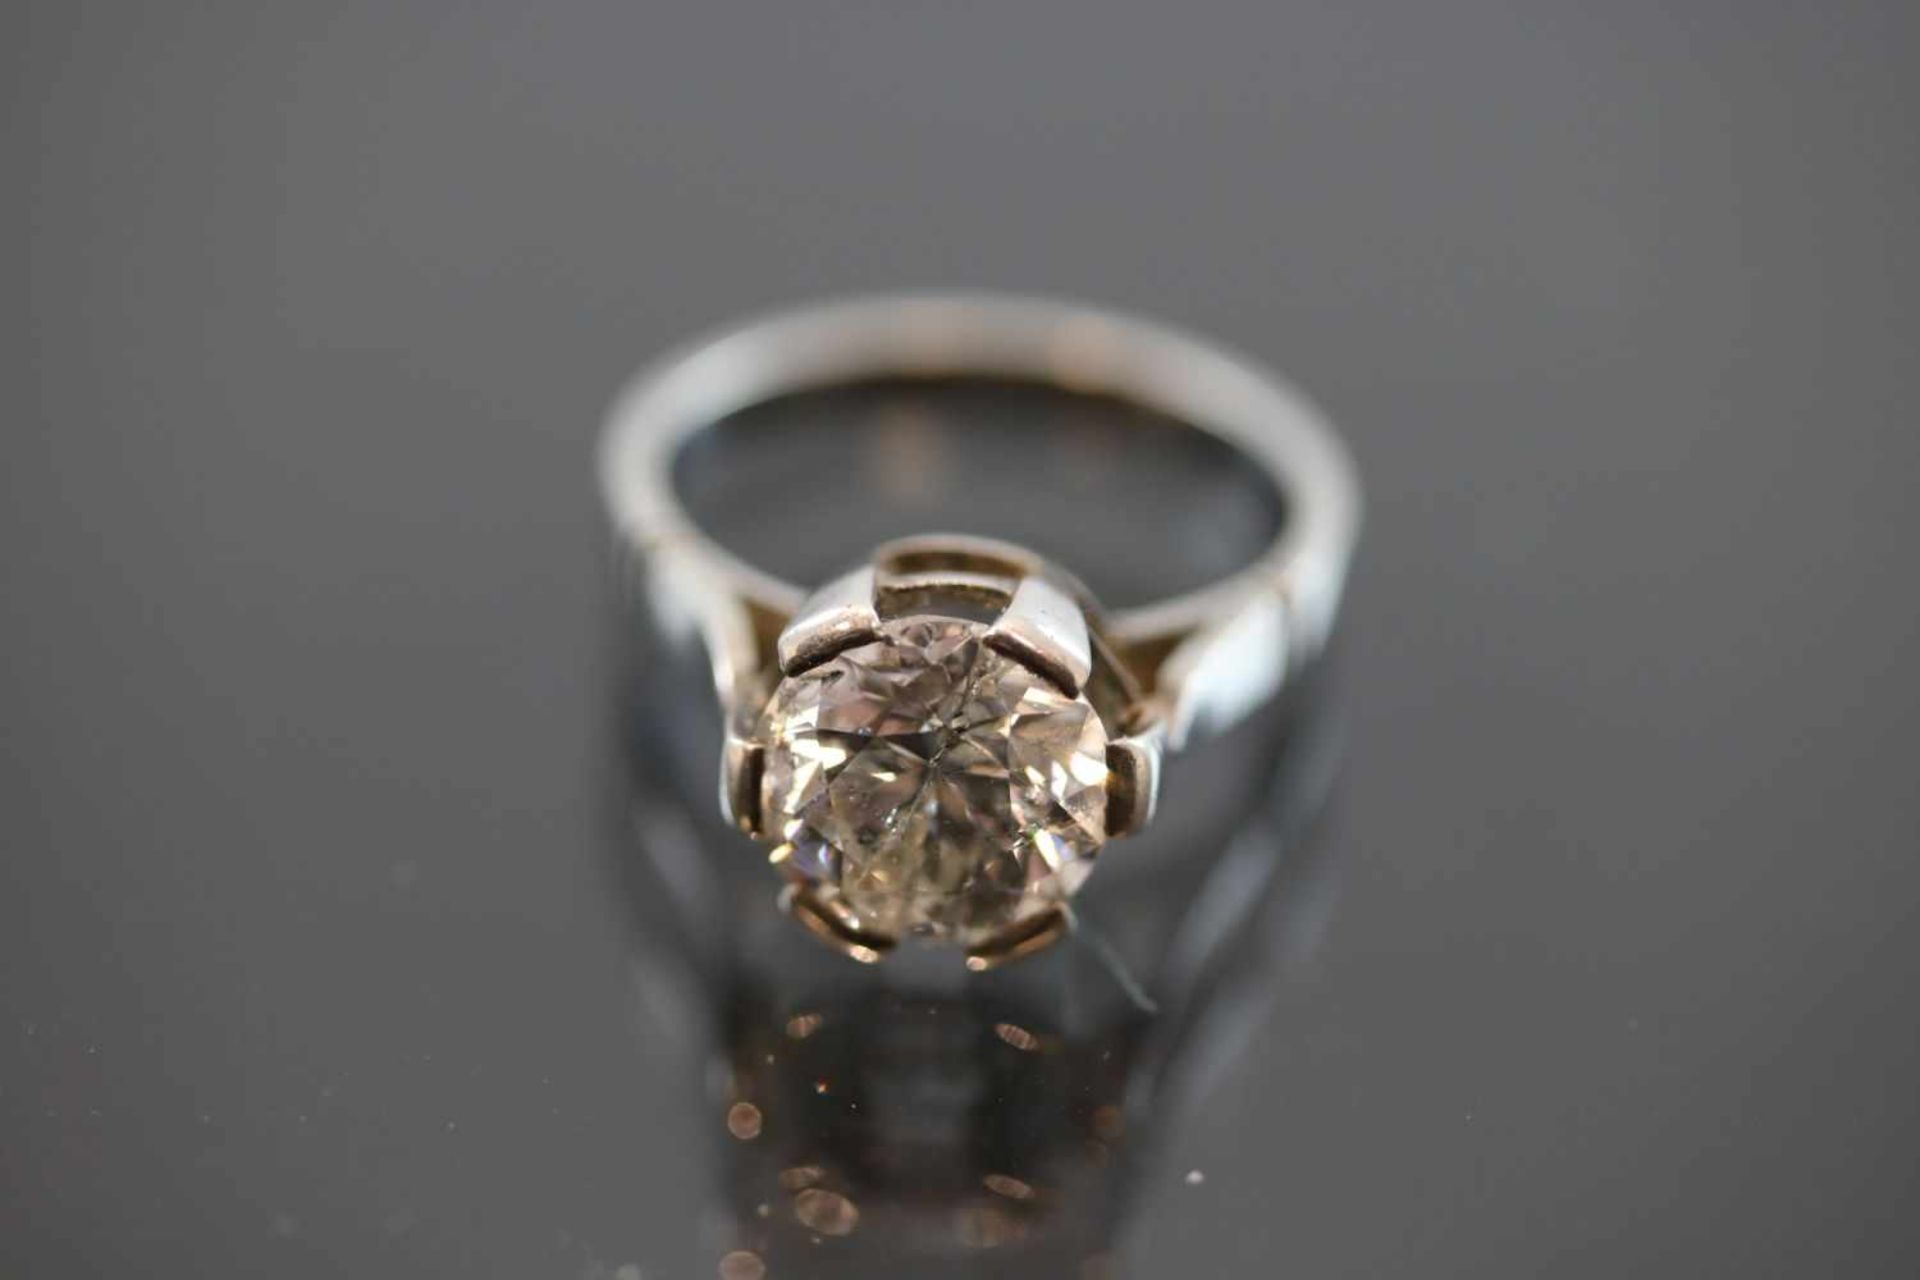 Brillant-Ring, Silber1,8 Gramm 1 Brillant, 2,7 ct., c/p. Ringgröße: 51- - -25.00 % buyer's premium